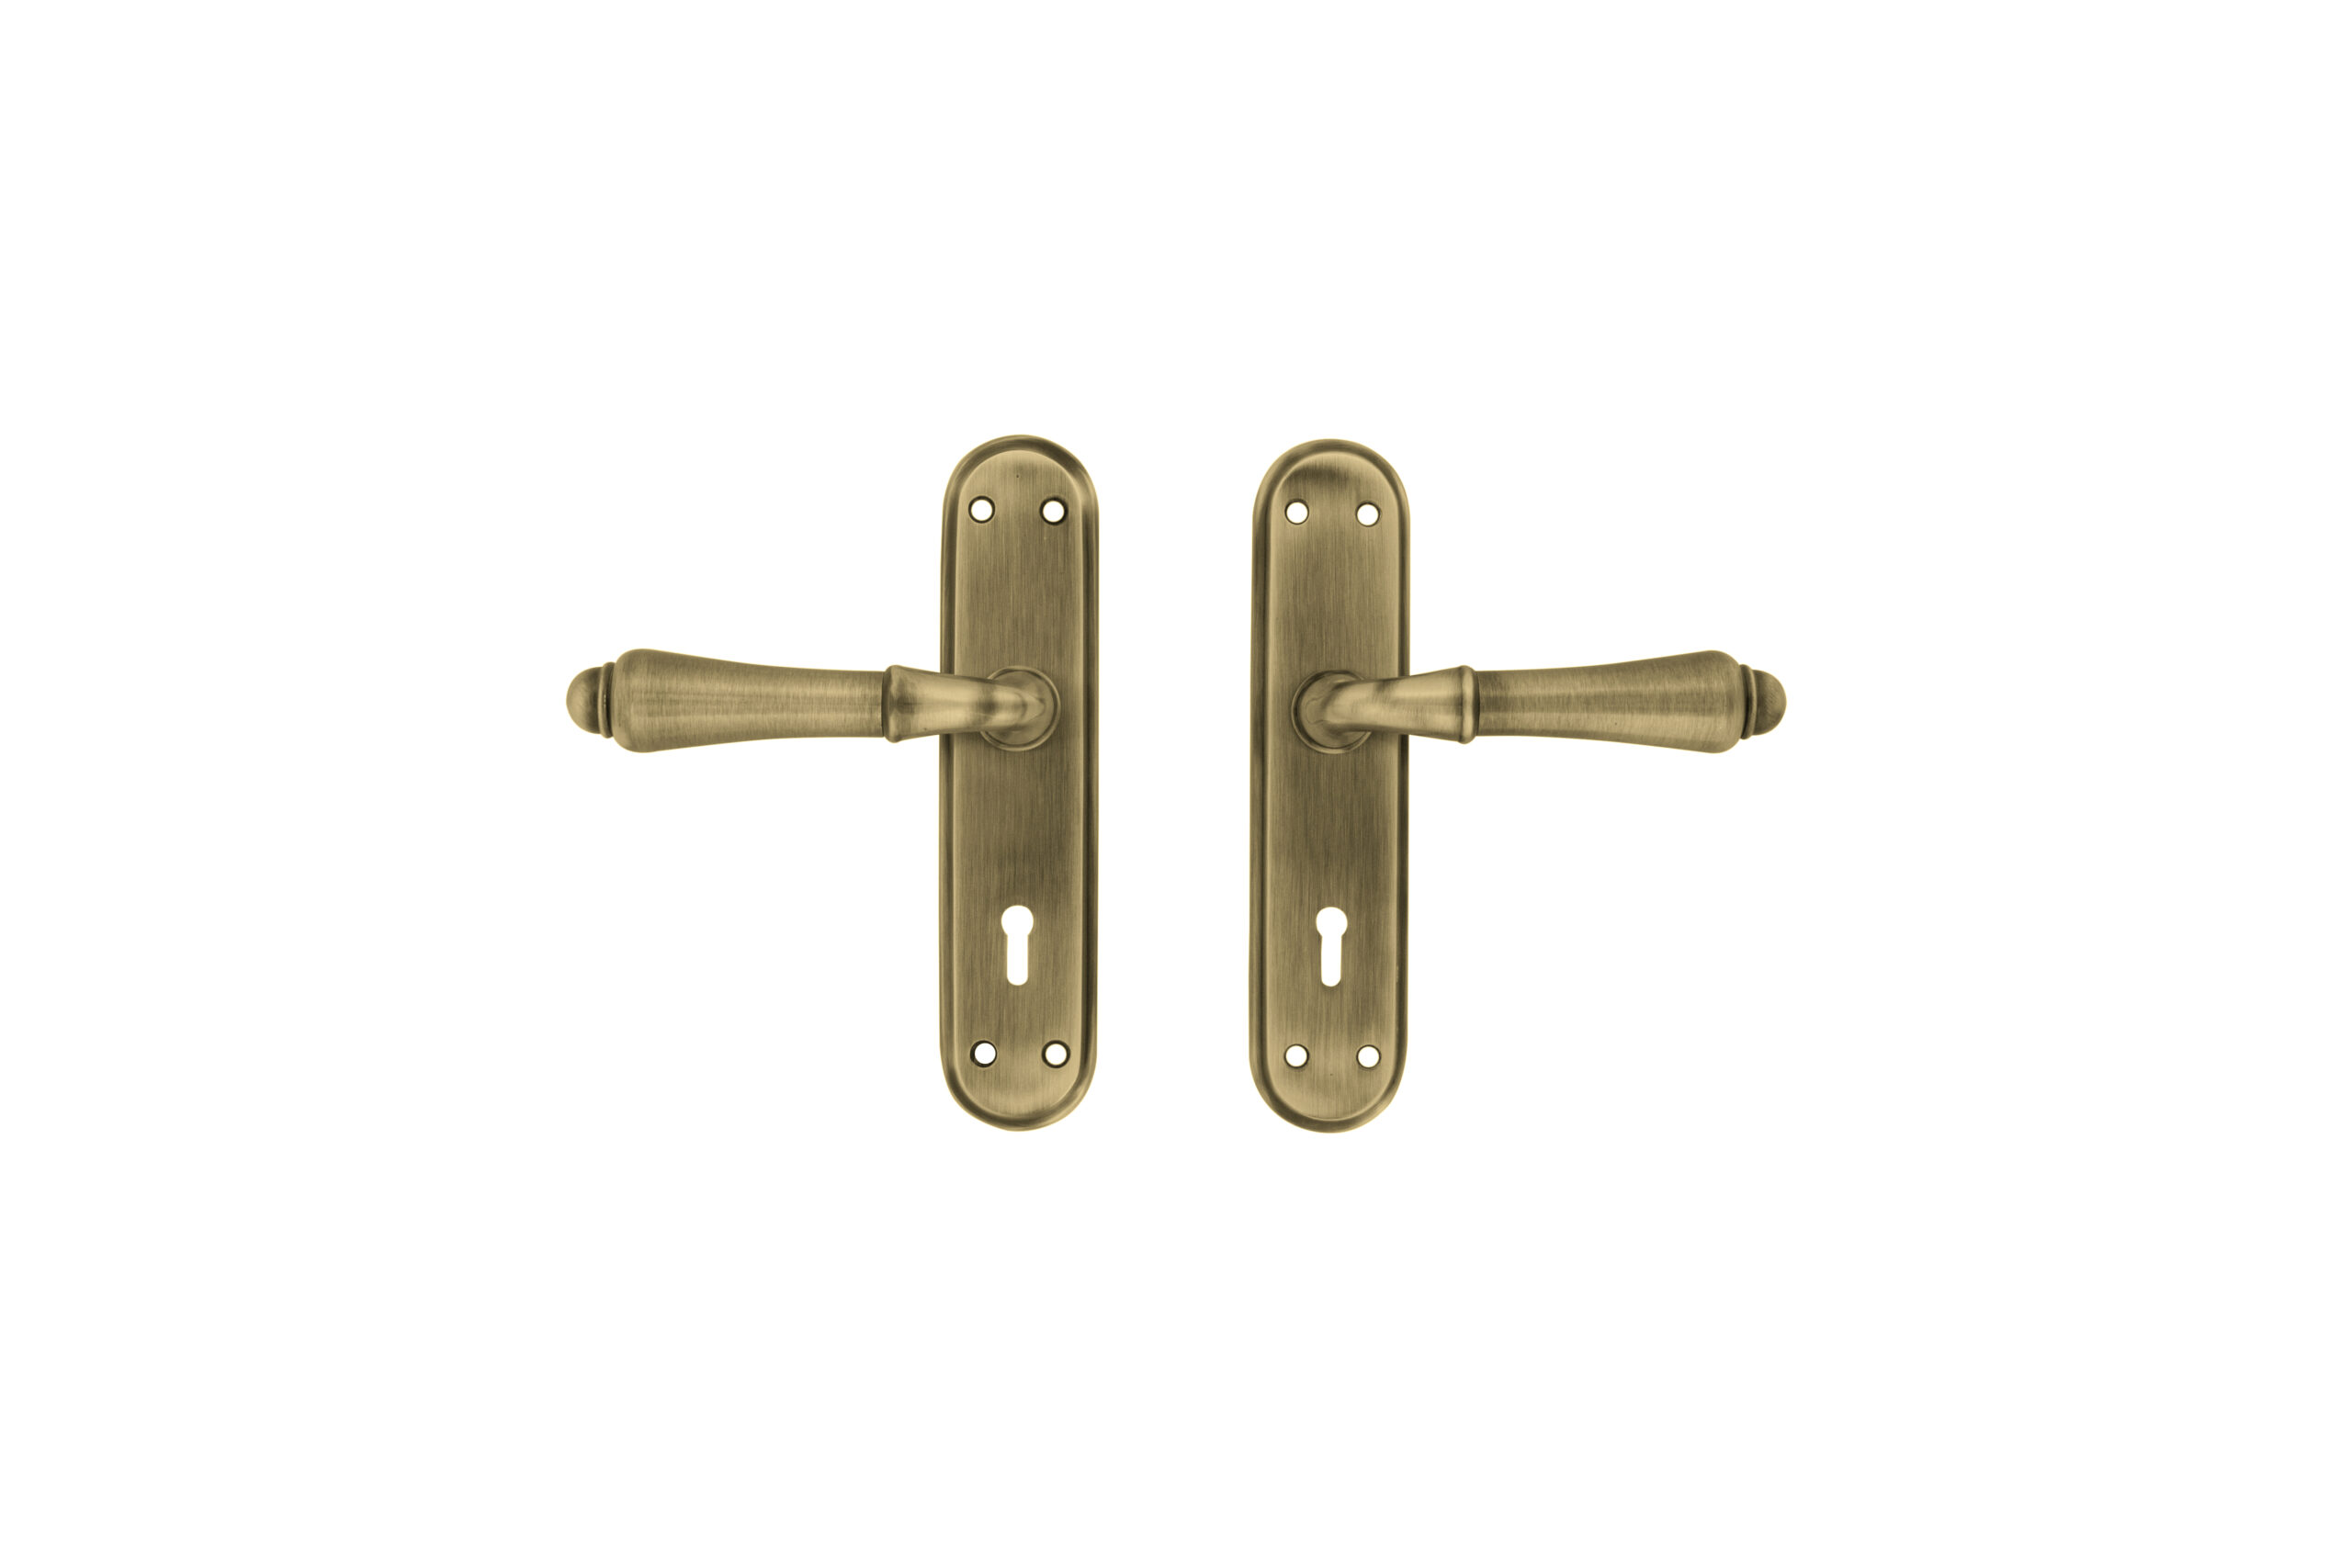 queen door handle on plate, key type, antique brass finish